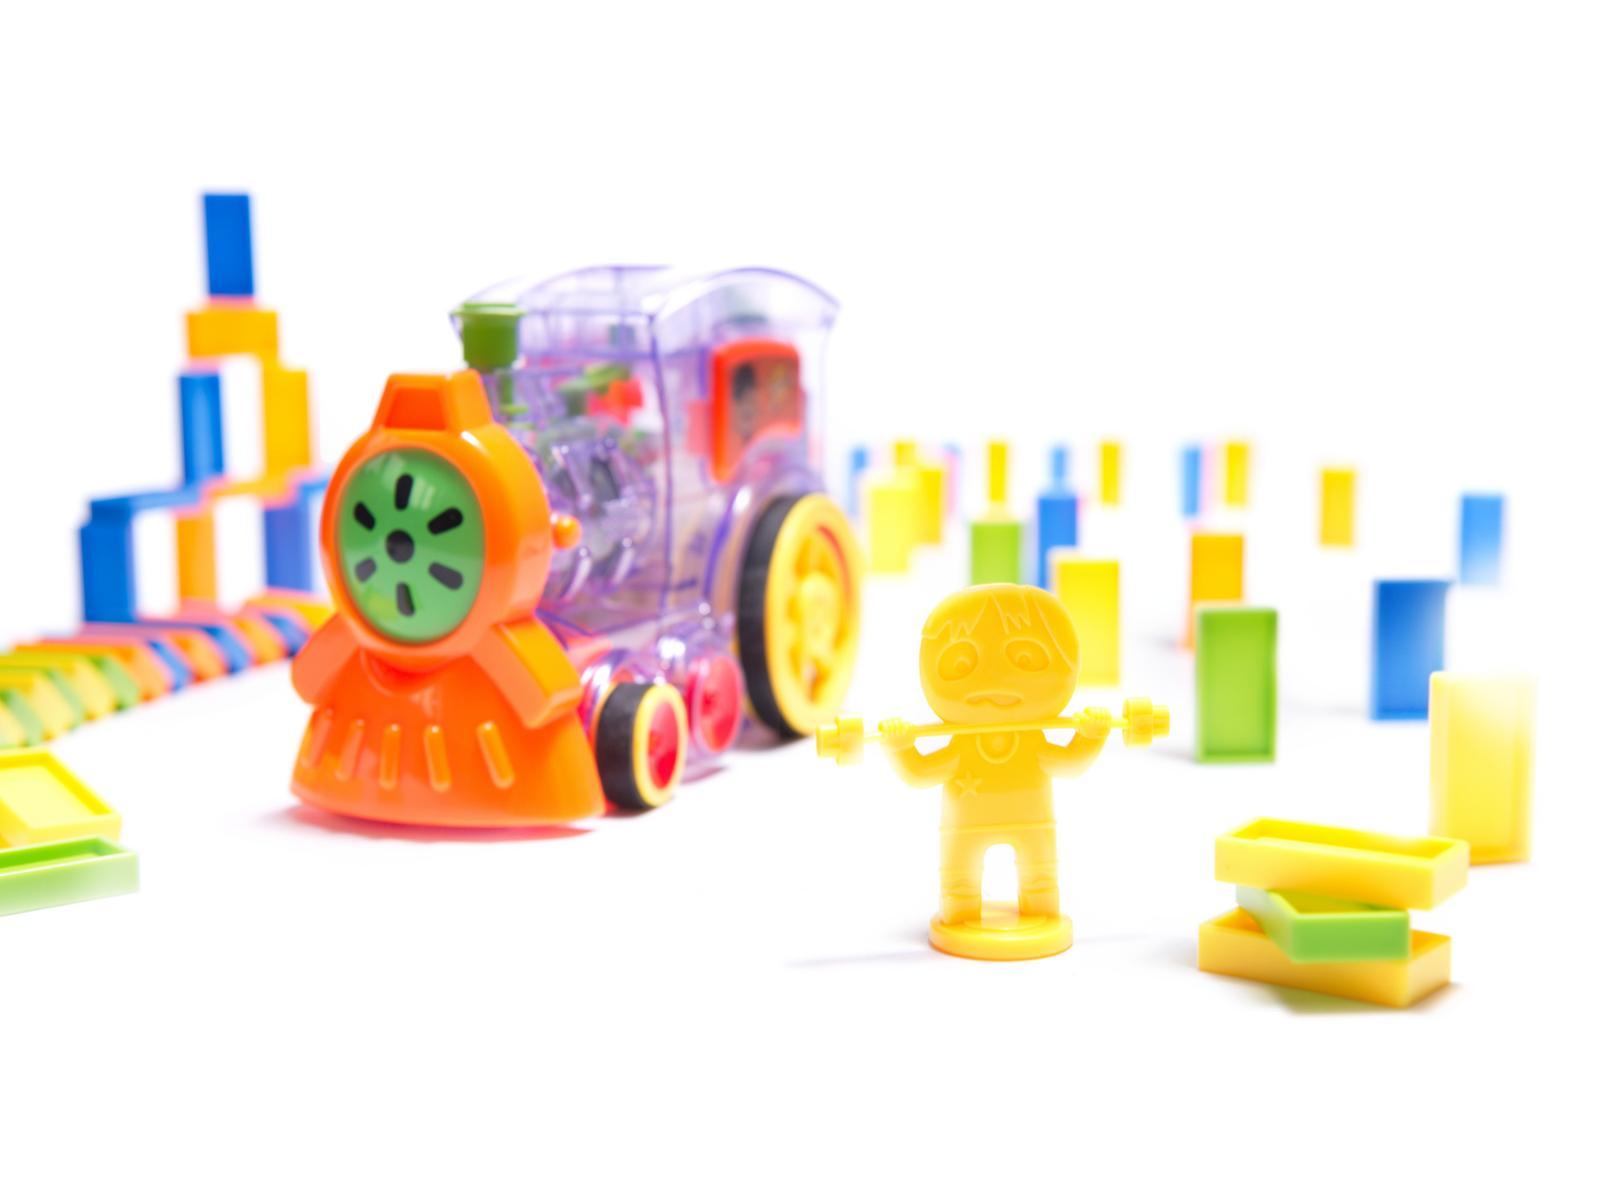 Pociąg Lokomotywa interaktywna układanka domino z kolejką zabawka dla dzieci 16x7x10 cm nr. 12